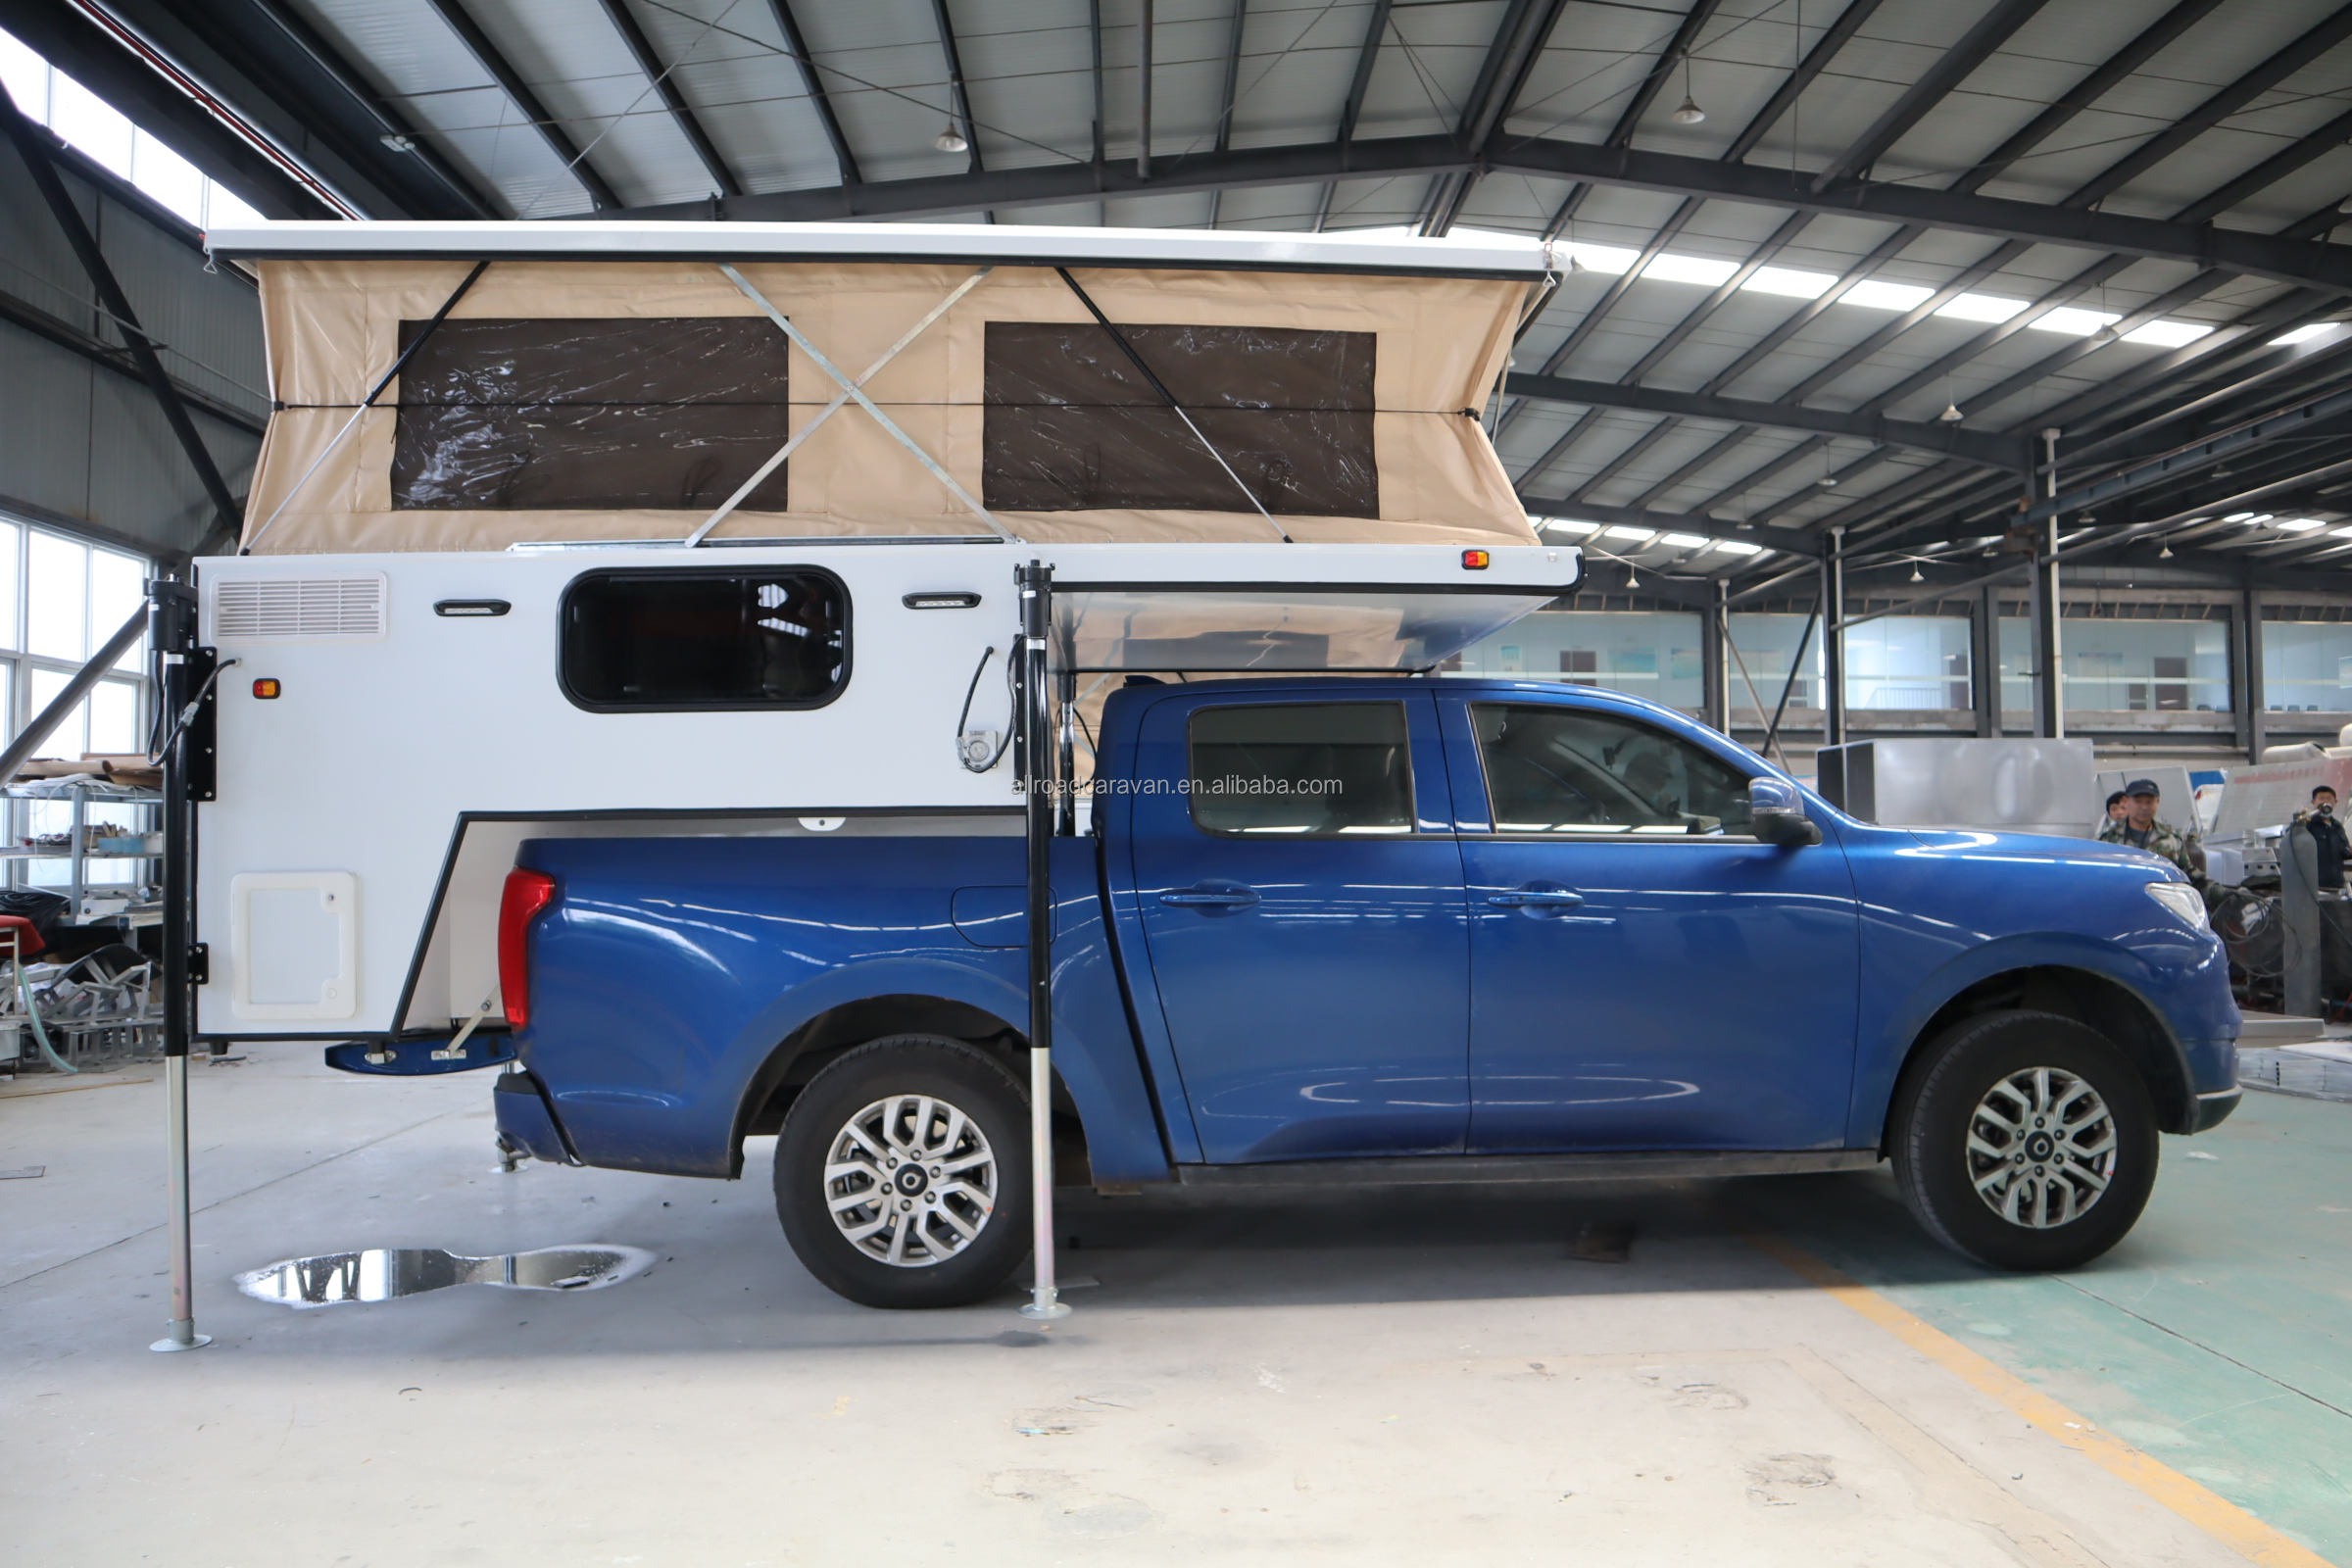 Pickup truck slide in camper pop top caravan with low power consumption